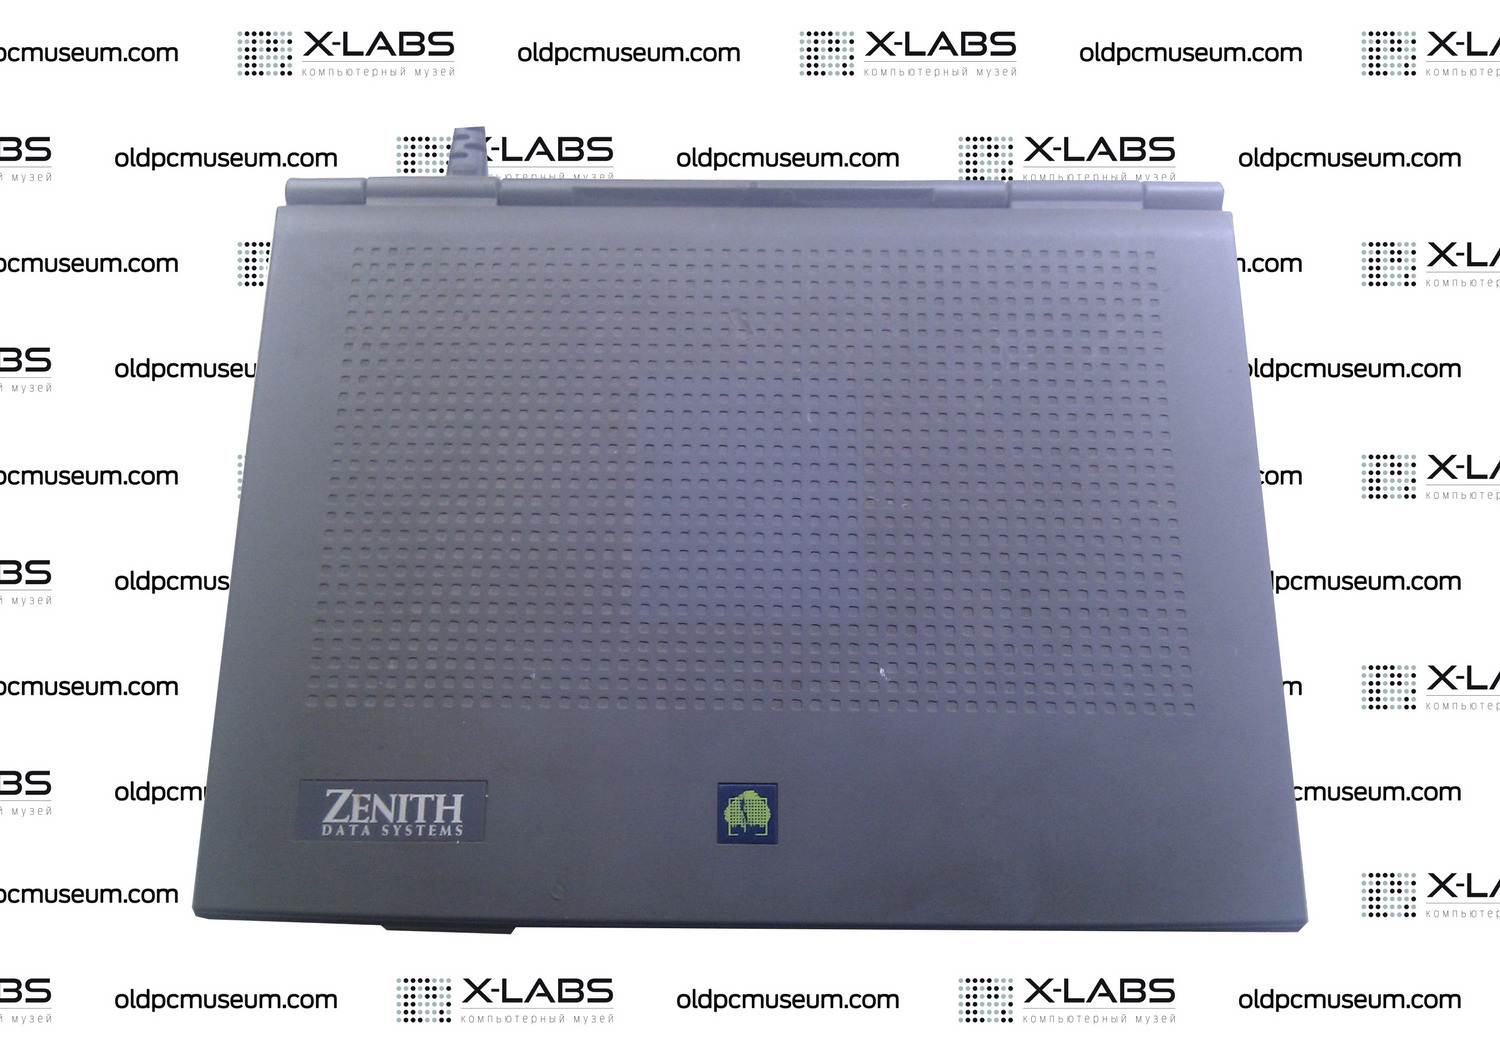 Zenith Z-Star ES i486dx2-50 notebook